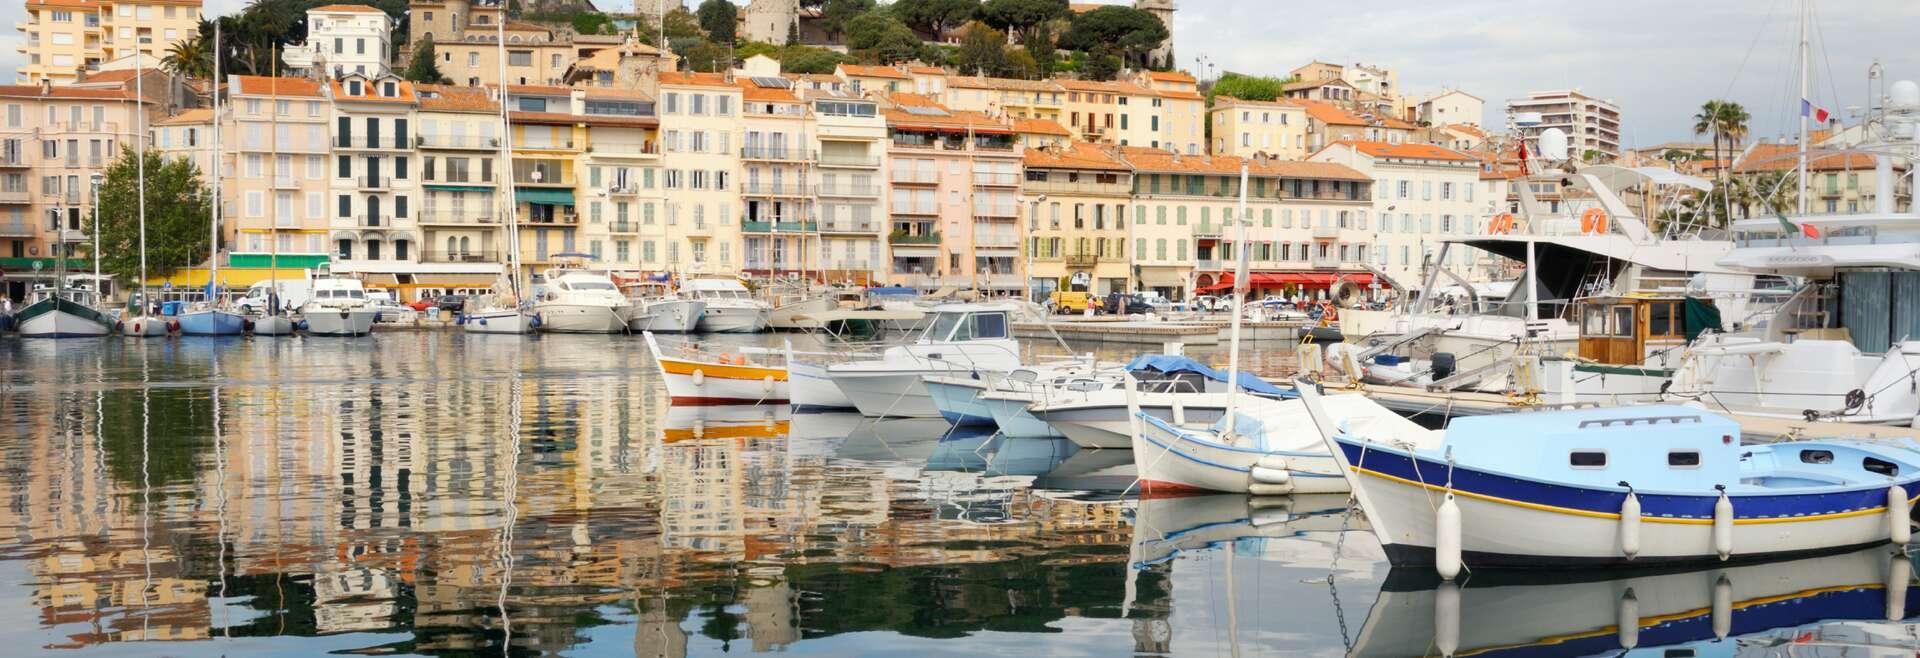 Sprachaufenthalt Frankreich, Cannes, Hafen